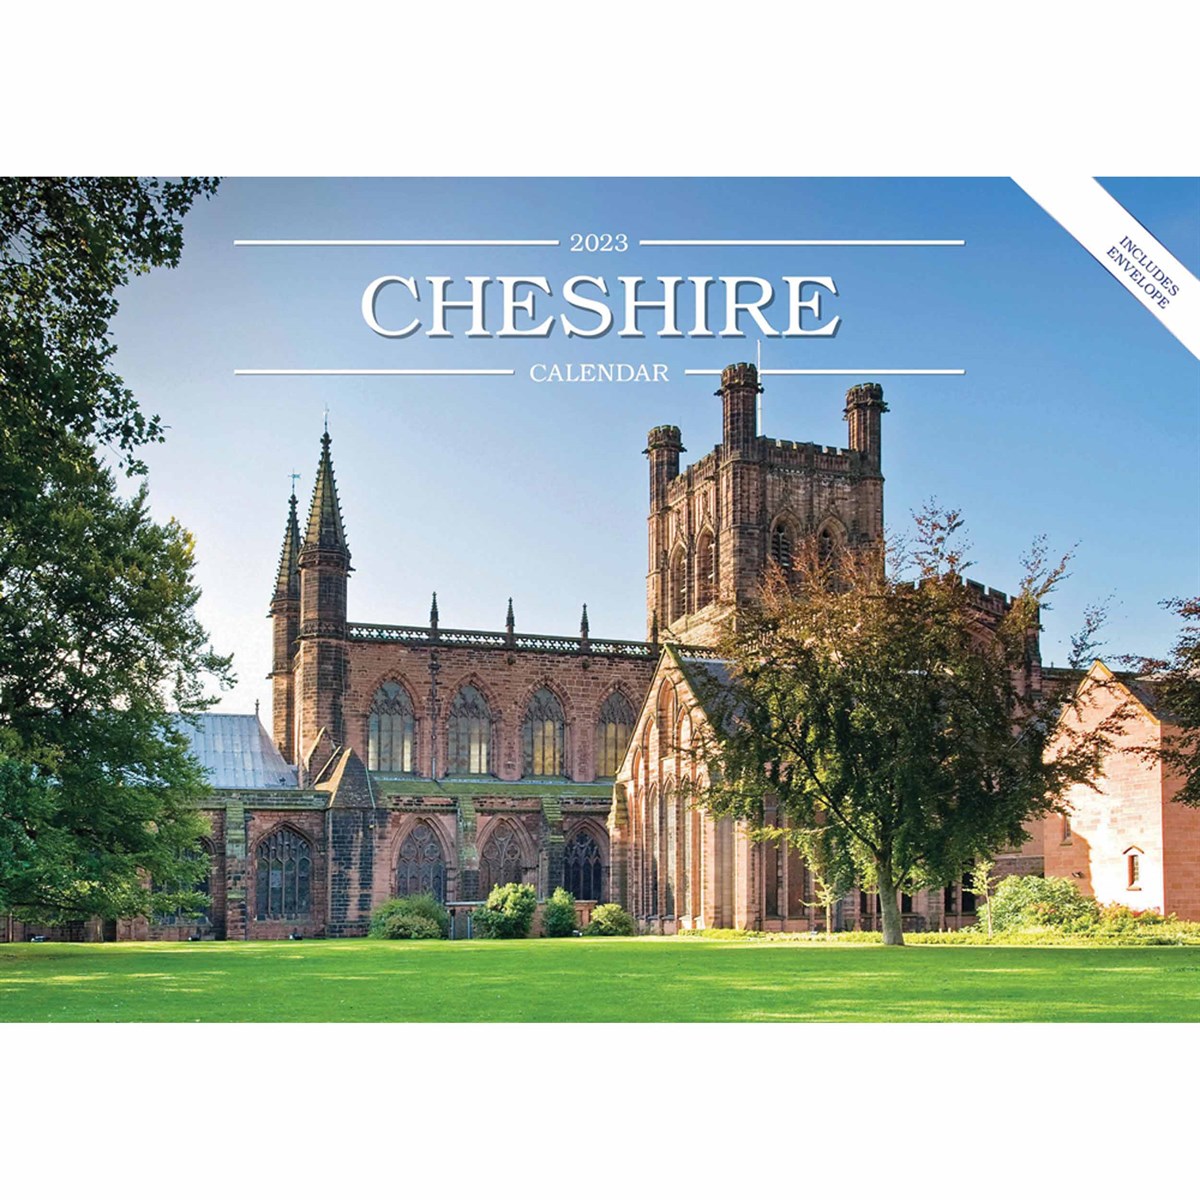 Cheshire A5 2023 Calendars